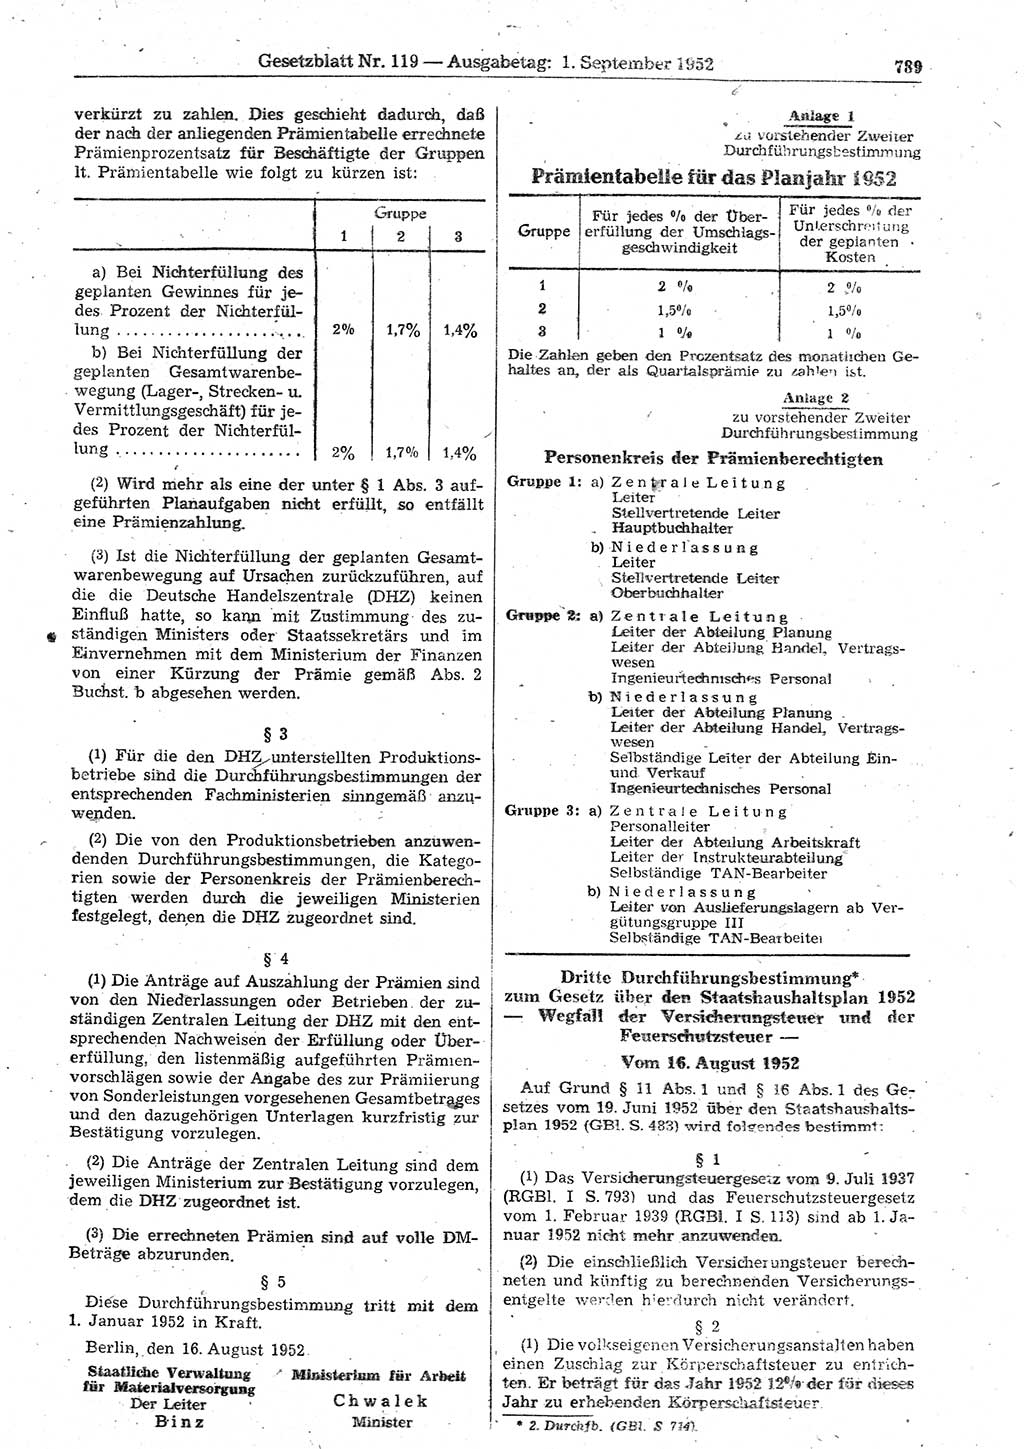 Gesetzblatt (GBl.) der Deutschen Demokratischen Republik (DDR) 1952, Seite 789 (GBl. DDR 1952, S. 789)